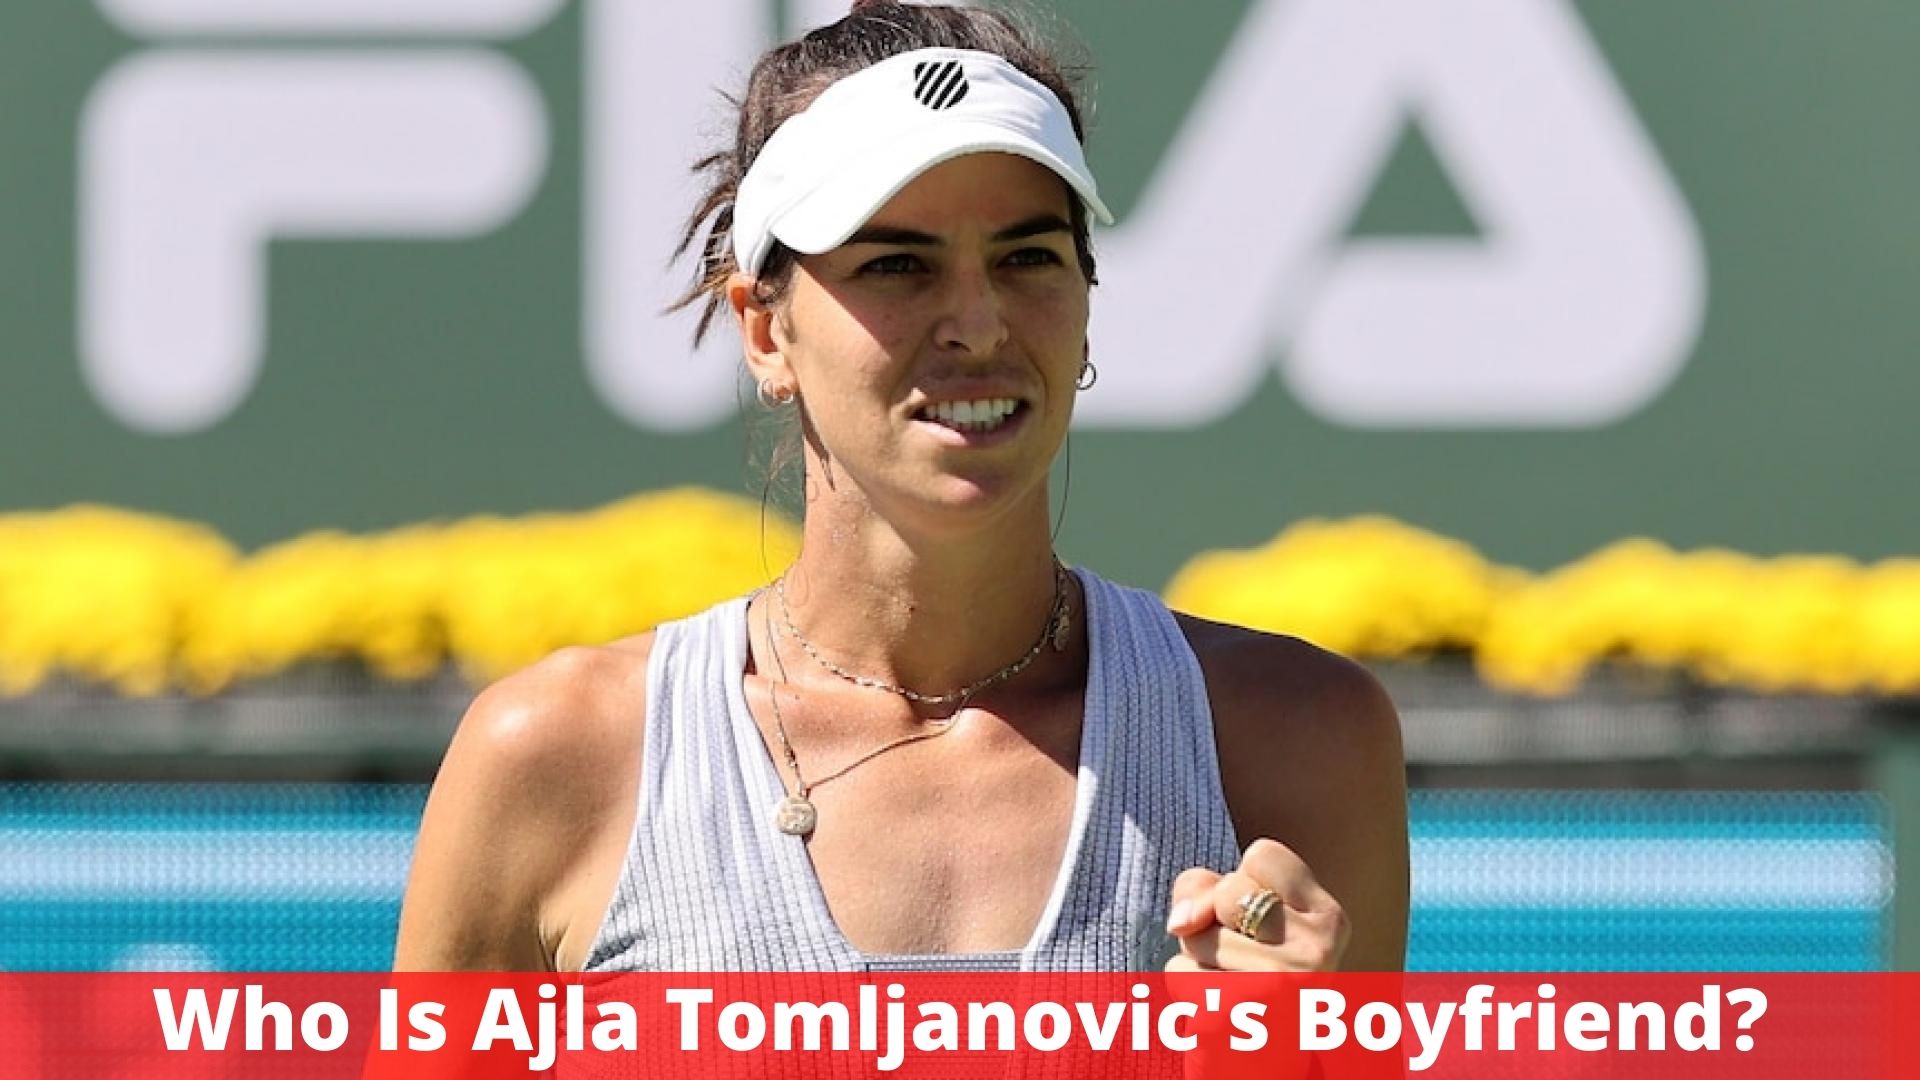 Who Is Ajla Tomljanovic's Boyfriend?